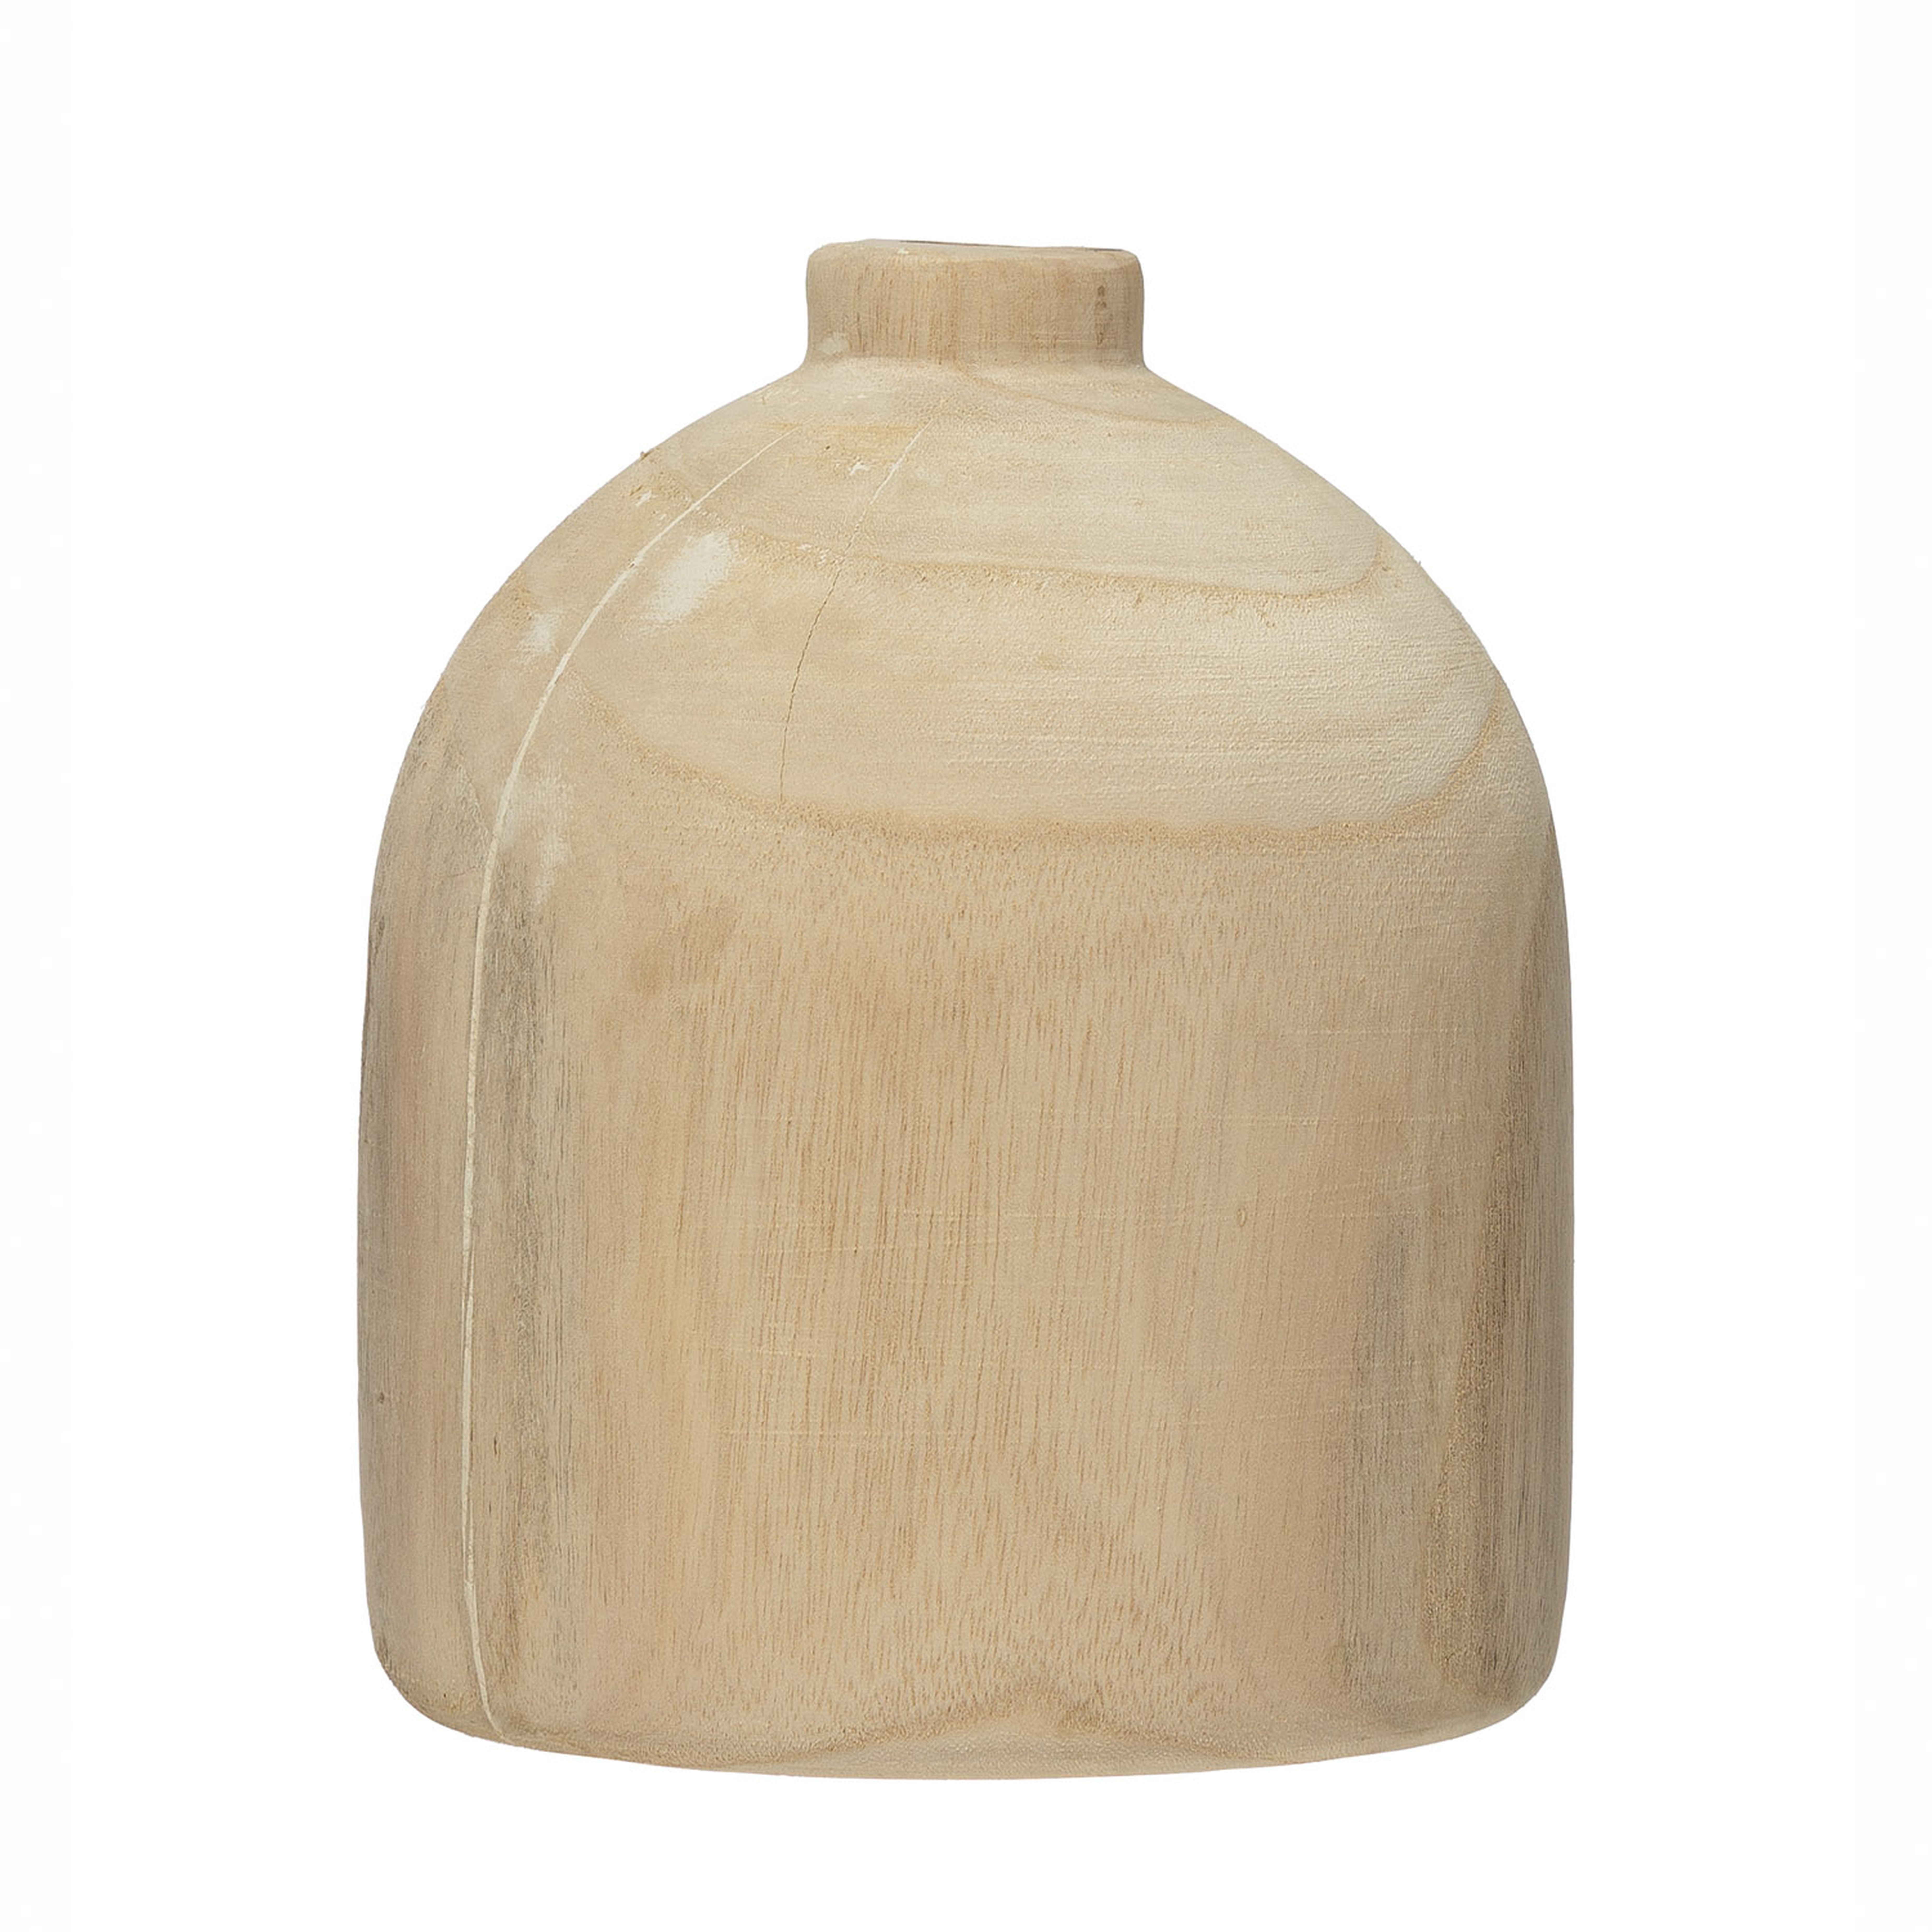 Decorative Paulownia Wood Vase - Nomad Home